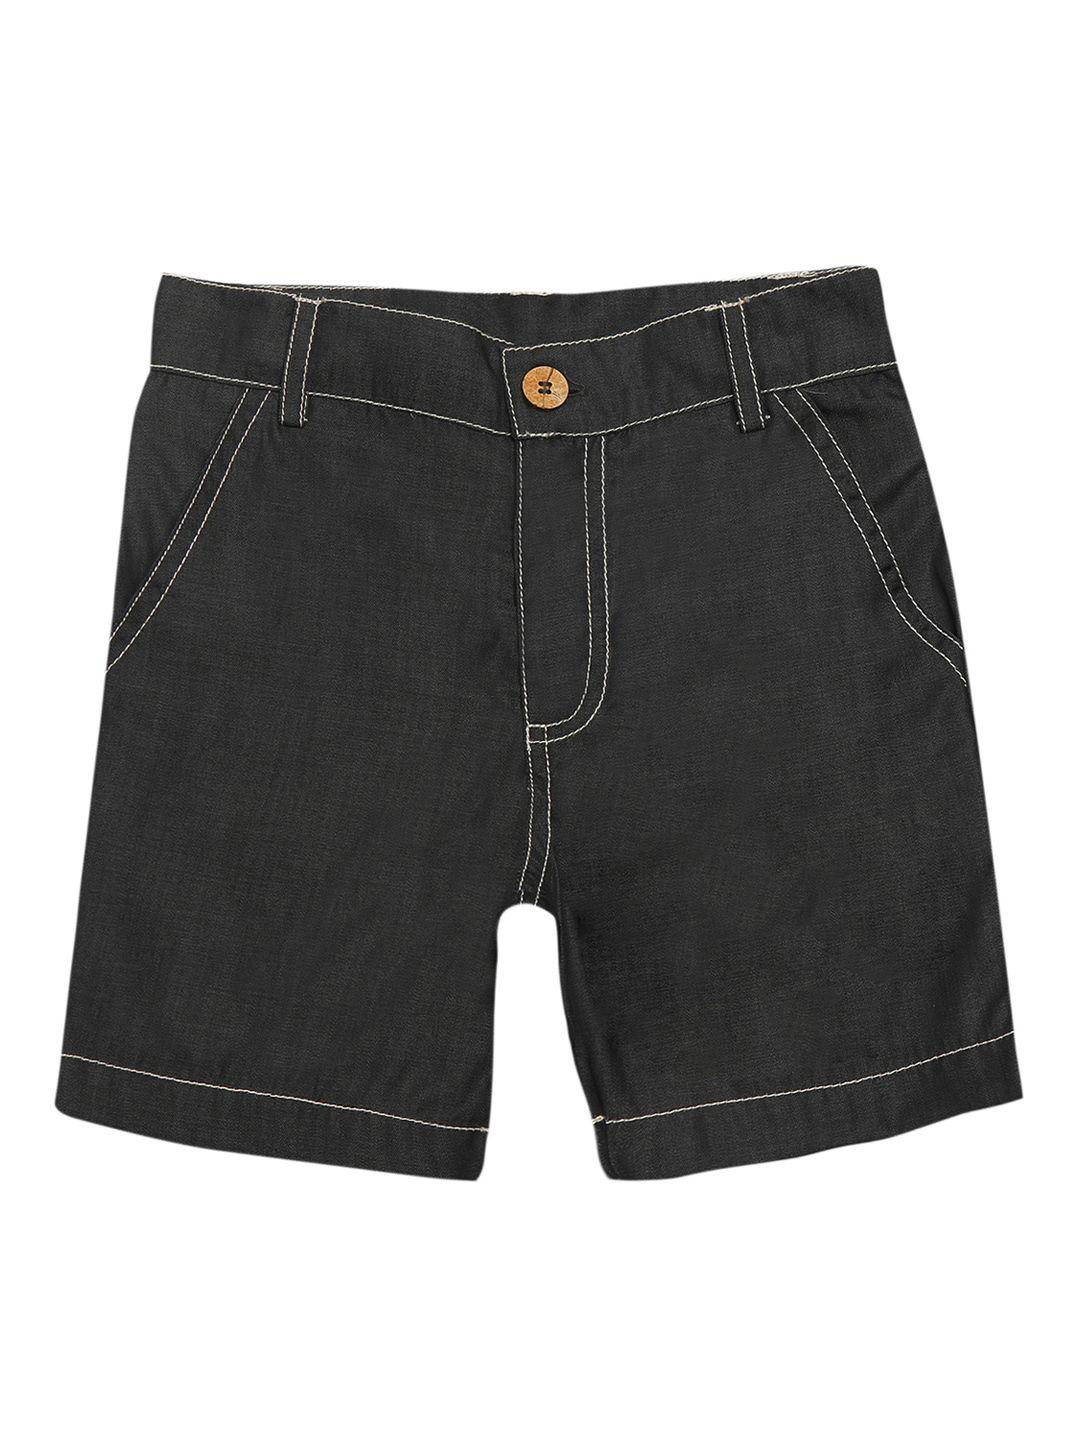 nino bambino boys grey organic cotton solid regular fit sustainable denim shorts